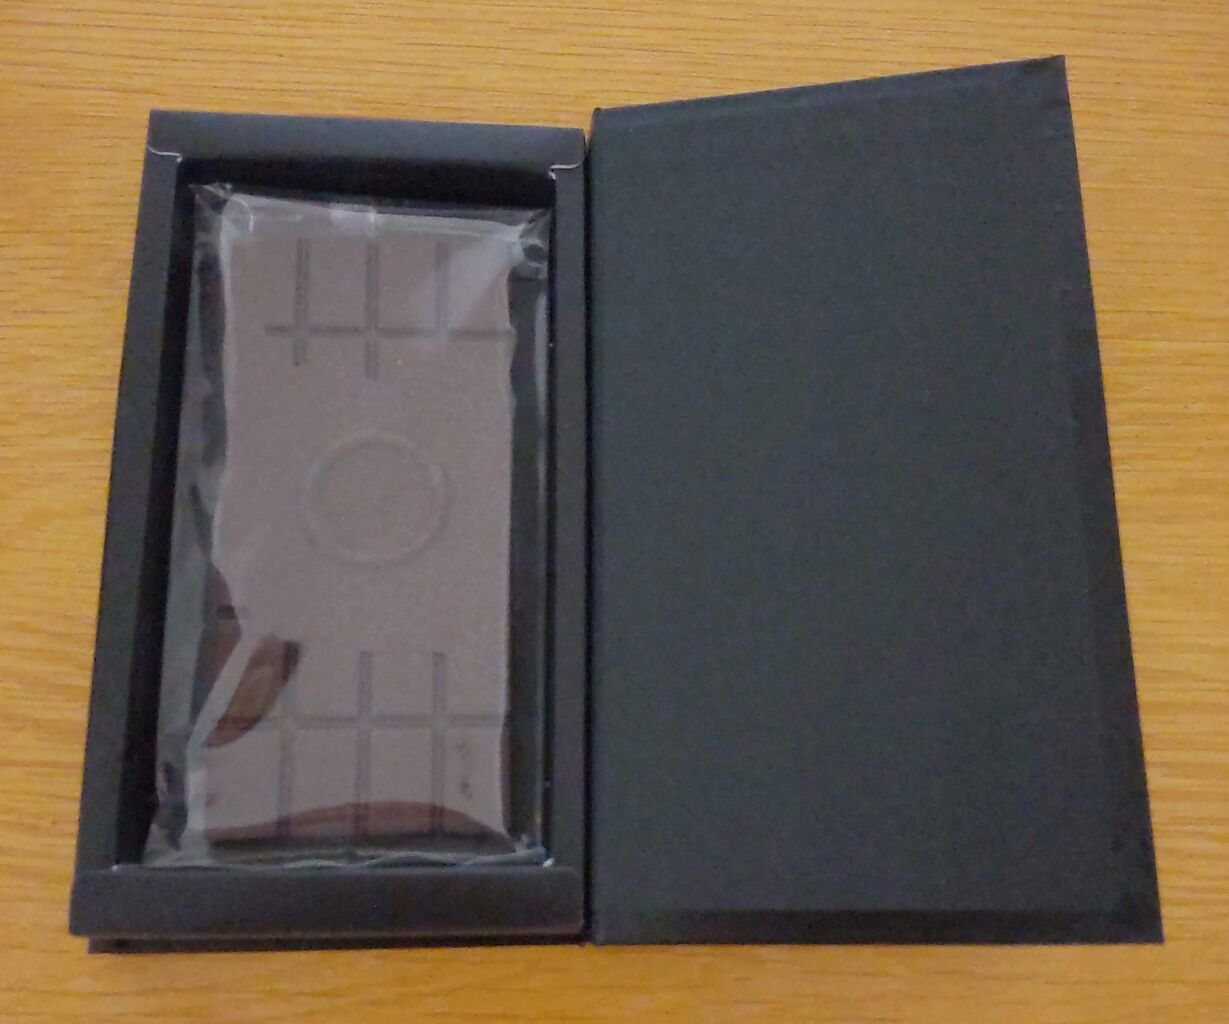 CHOCOLATERIE TAKASUのタブレットノワールの箱の蓋を開けた写真